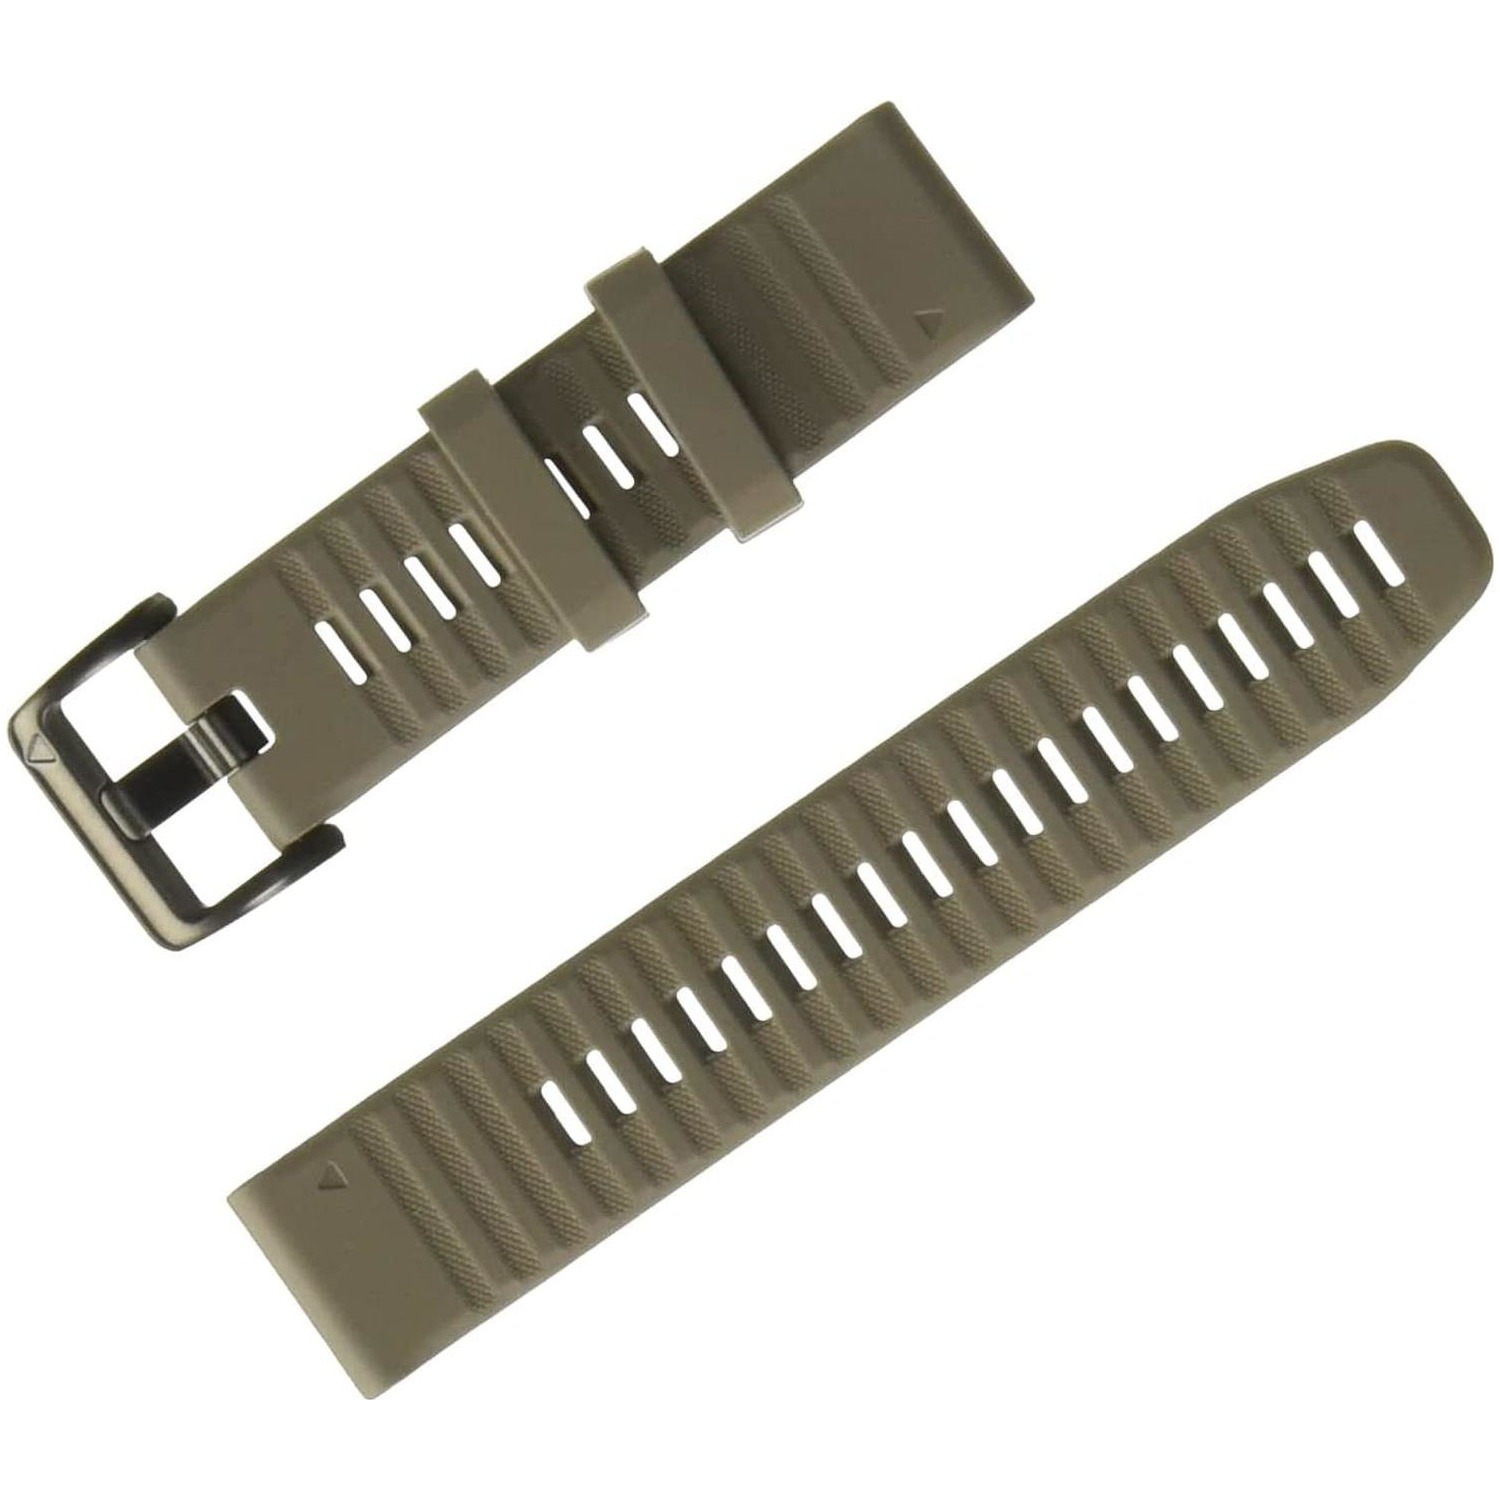 Immagine per Cinturino Garmin per Fenix 6 22cm in silicone arenaria da DIMOStore